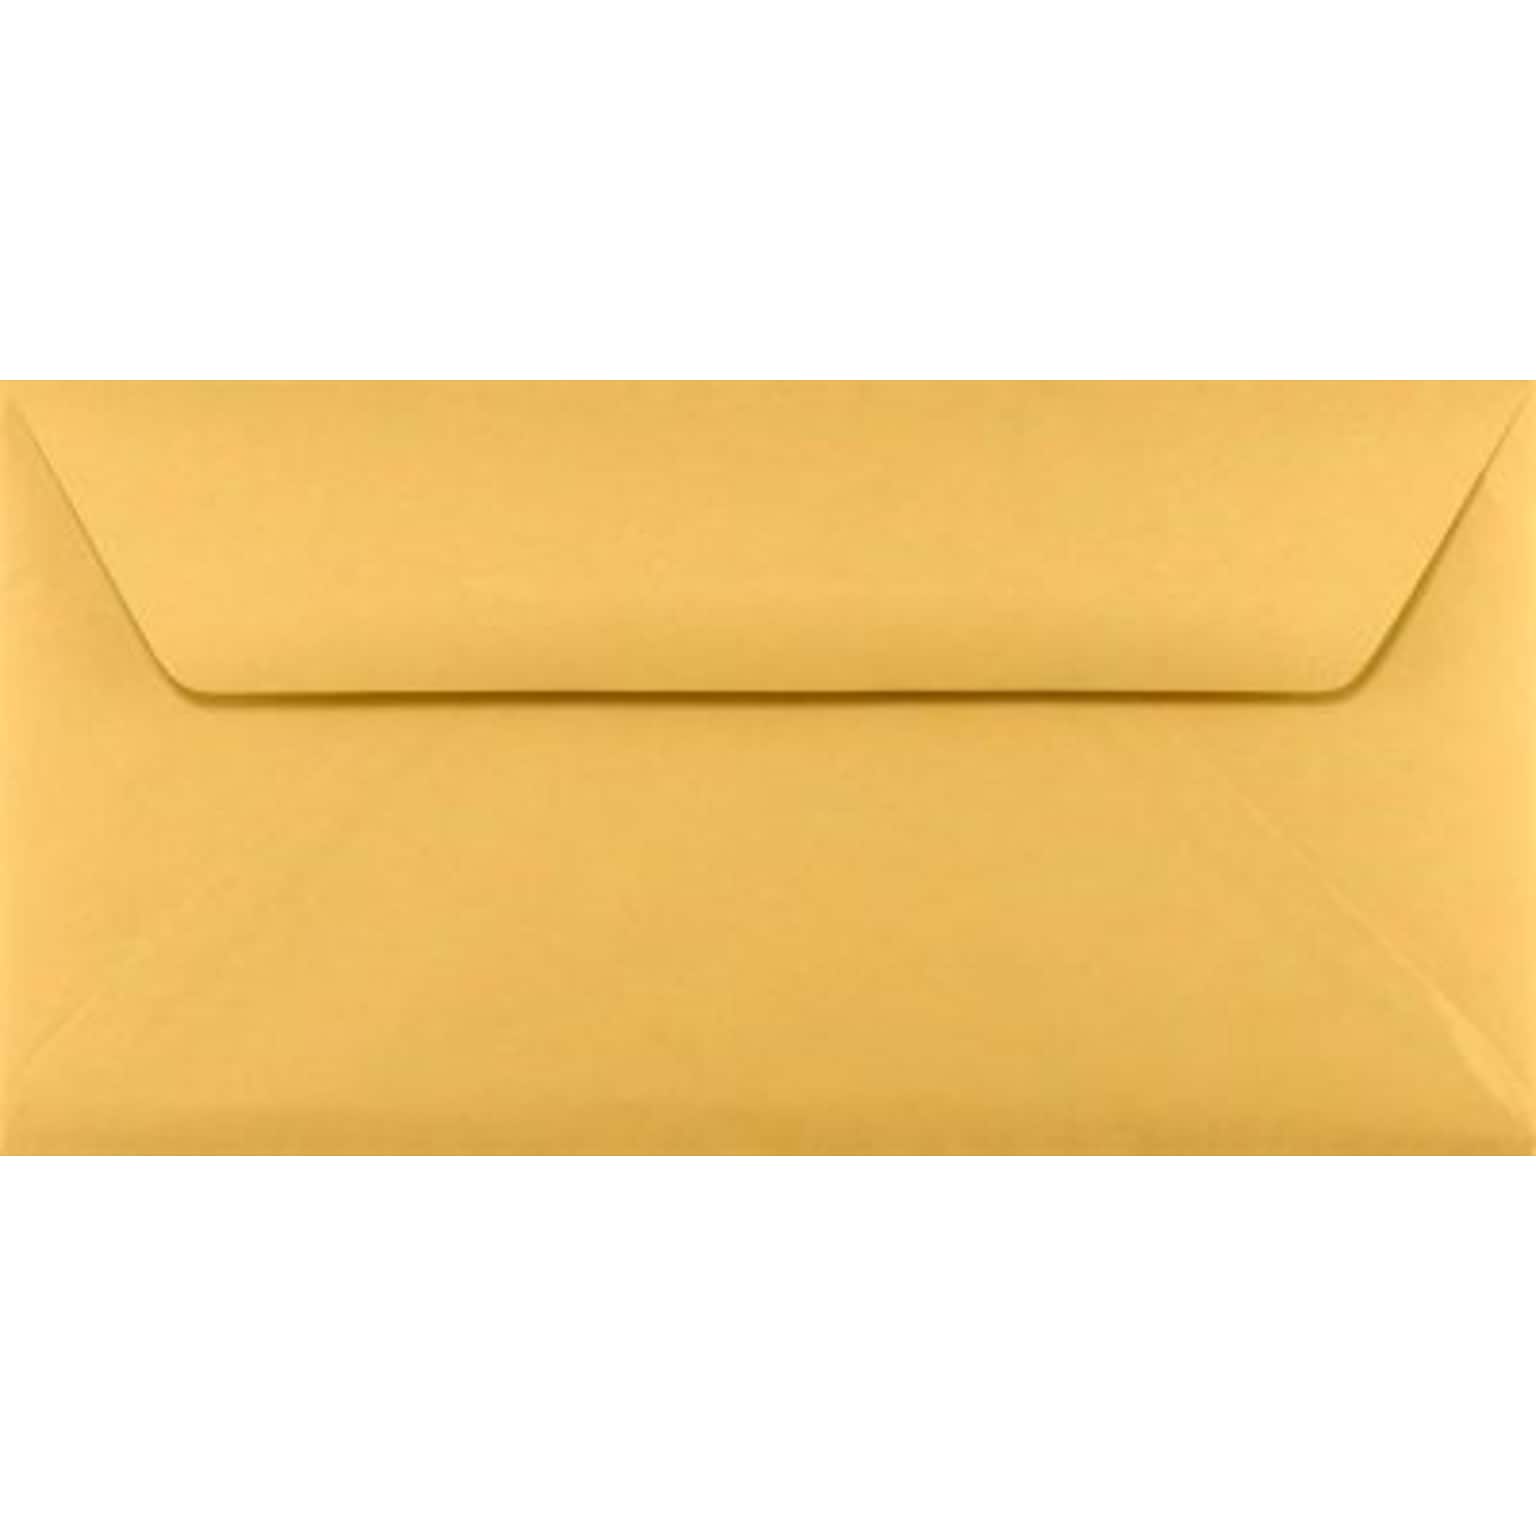 LUX #16 Bankers Flap Envelopes (6 x 12) 50/Box, 28lb. Brown Kraft (WS-3680-50)